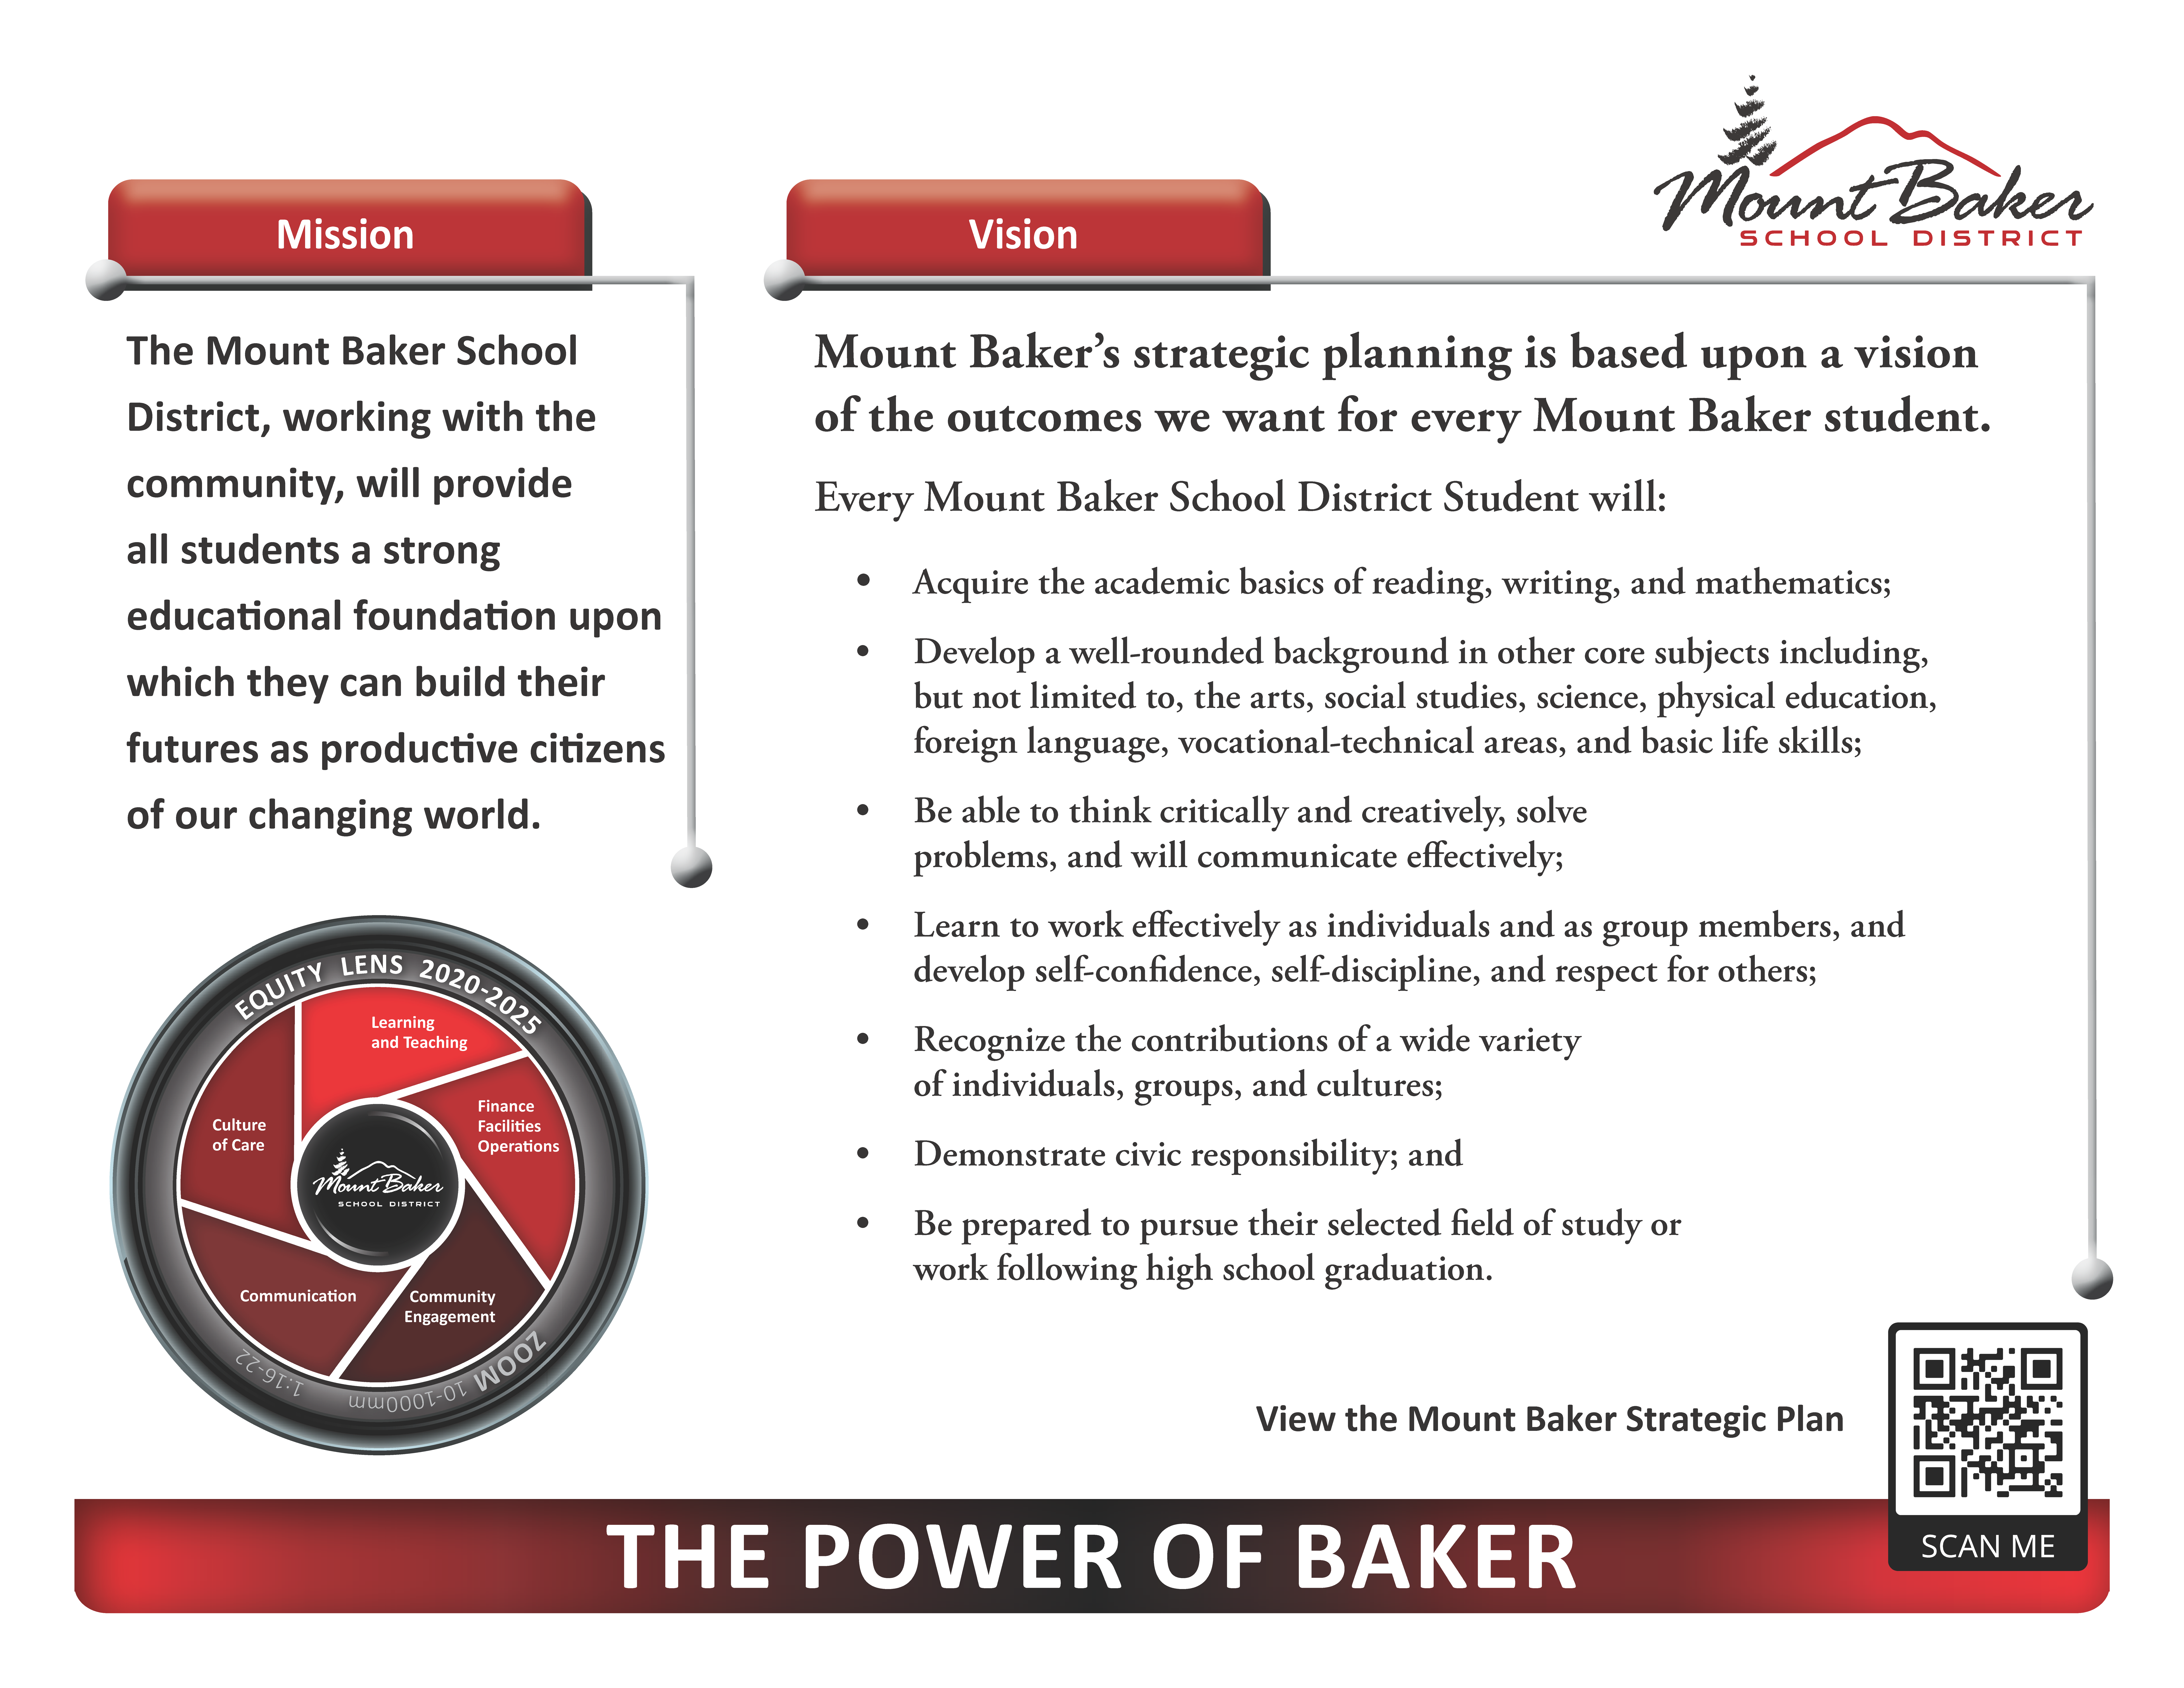 Mount Baker Strategic Plan 2020-2025